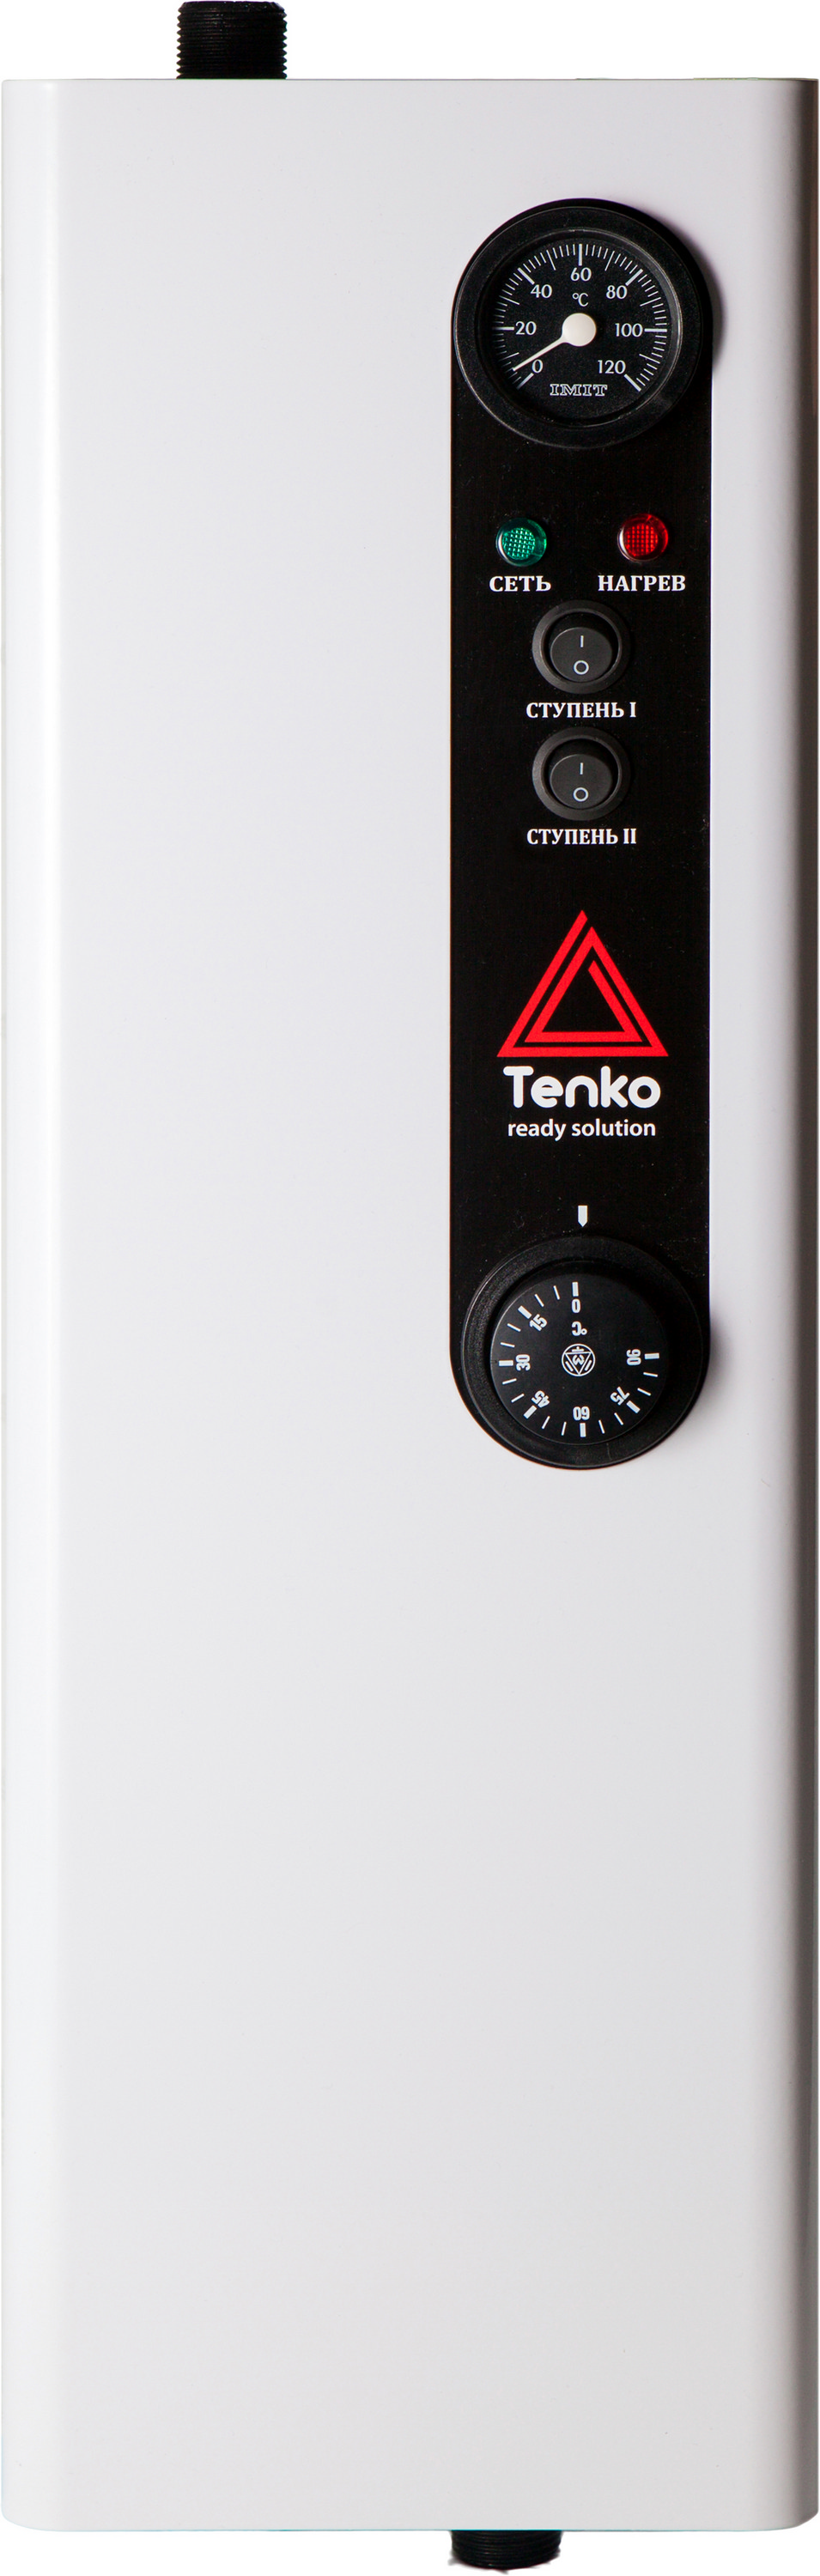 Отзывы однофазный электрокотел на 220 вольт Tenko Эконом 6 220 в Украине